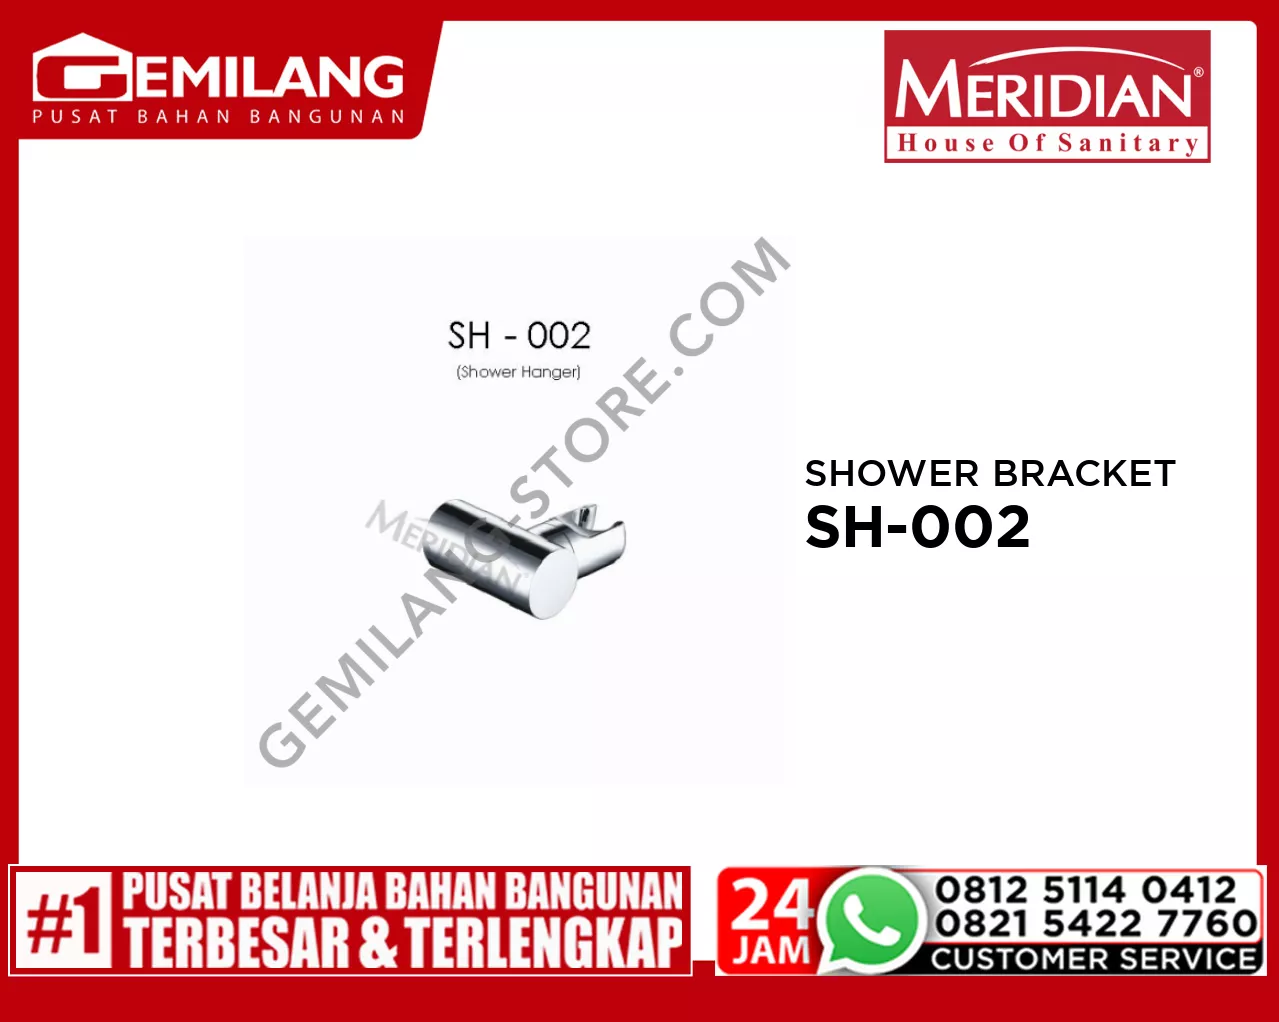 MERIDIAN SHOWER BRACKET SH-002